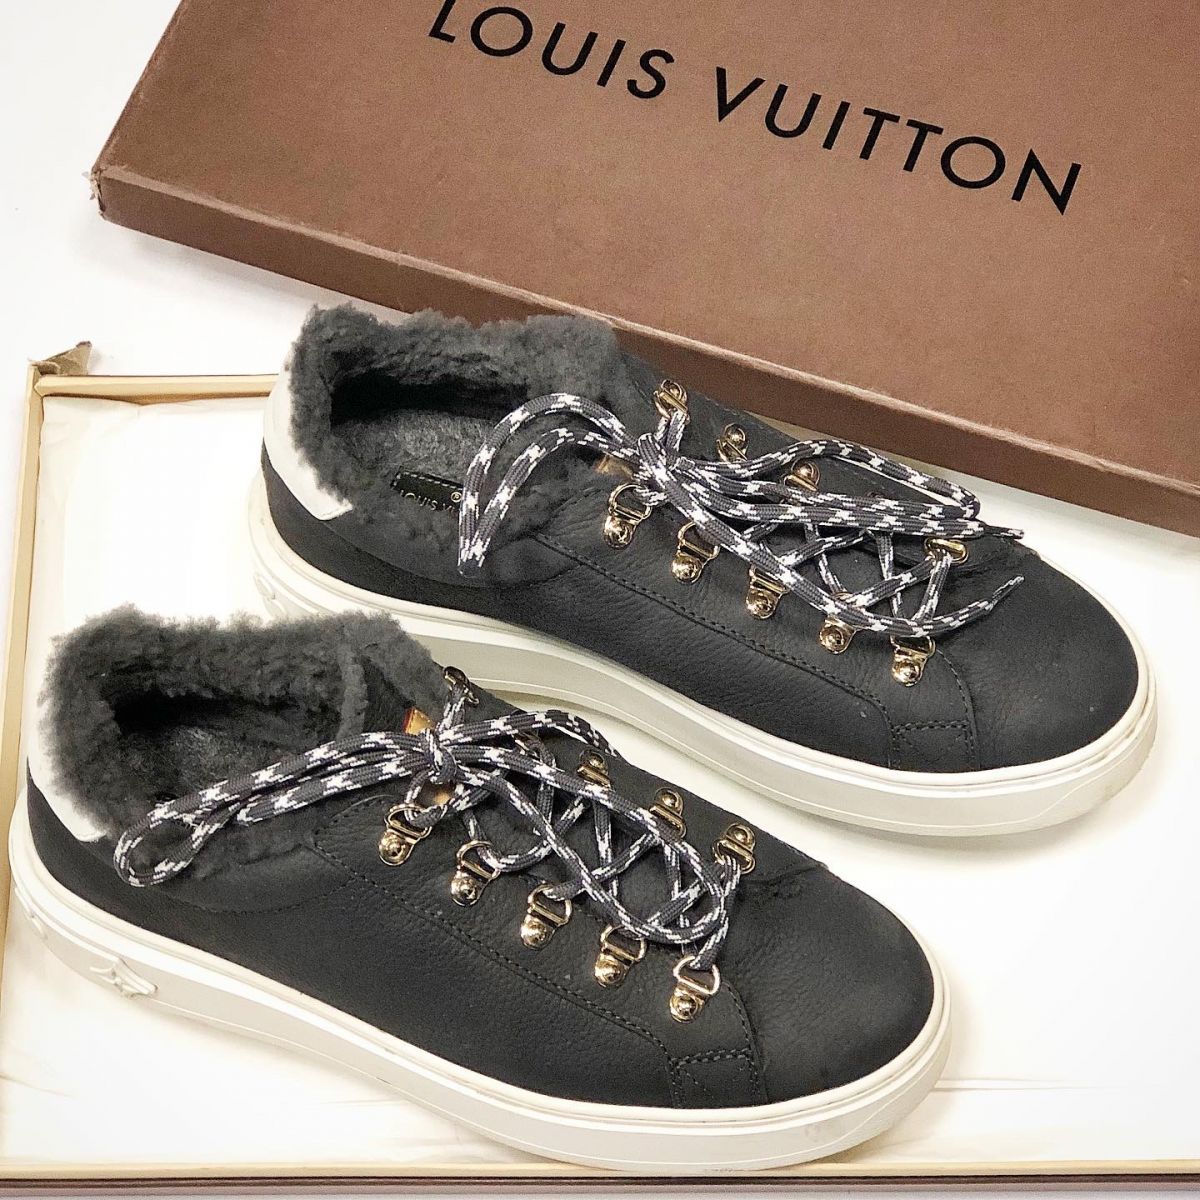 Кеды / на меху / Louis Vuitton  размер 37.5 цена 23 077 руб